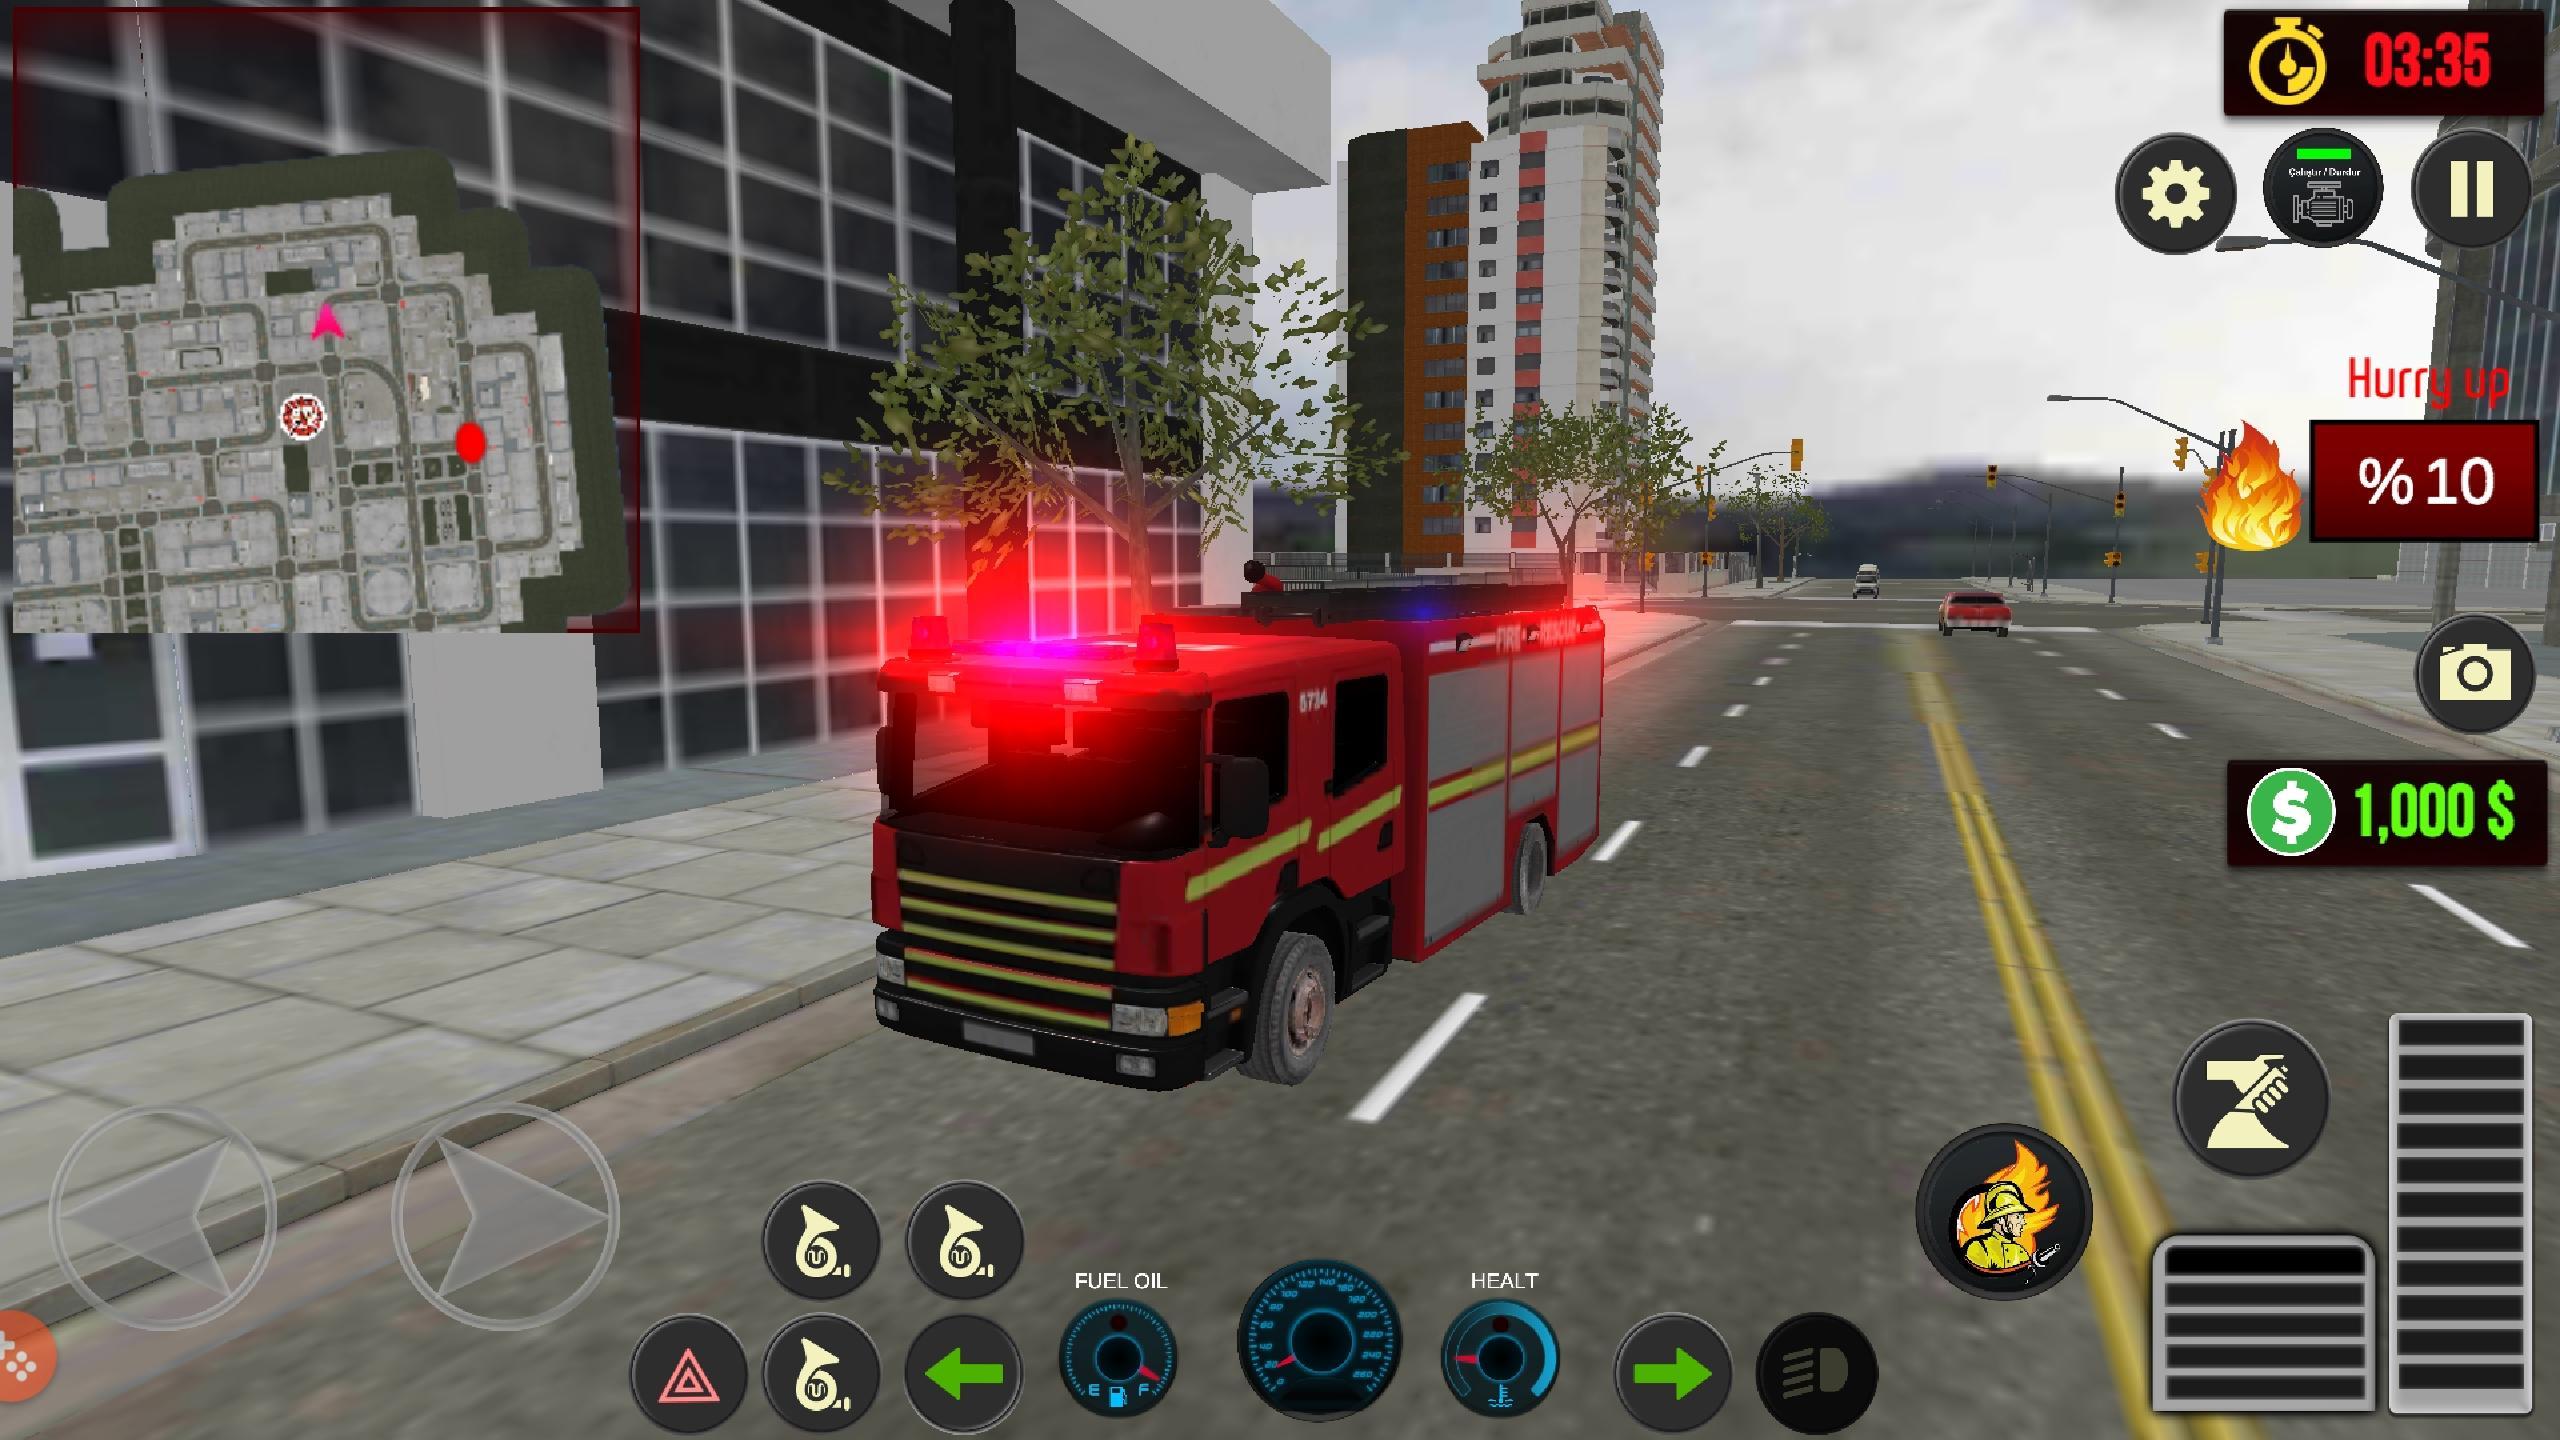 Симулятор пожарной машины на андроид. Симулятор 112. Симулятор 911 пожарных на ПК. 3д игра раннер про пожарные машины на Android. Симулятор пожарной машины